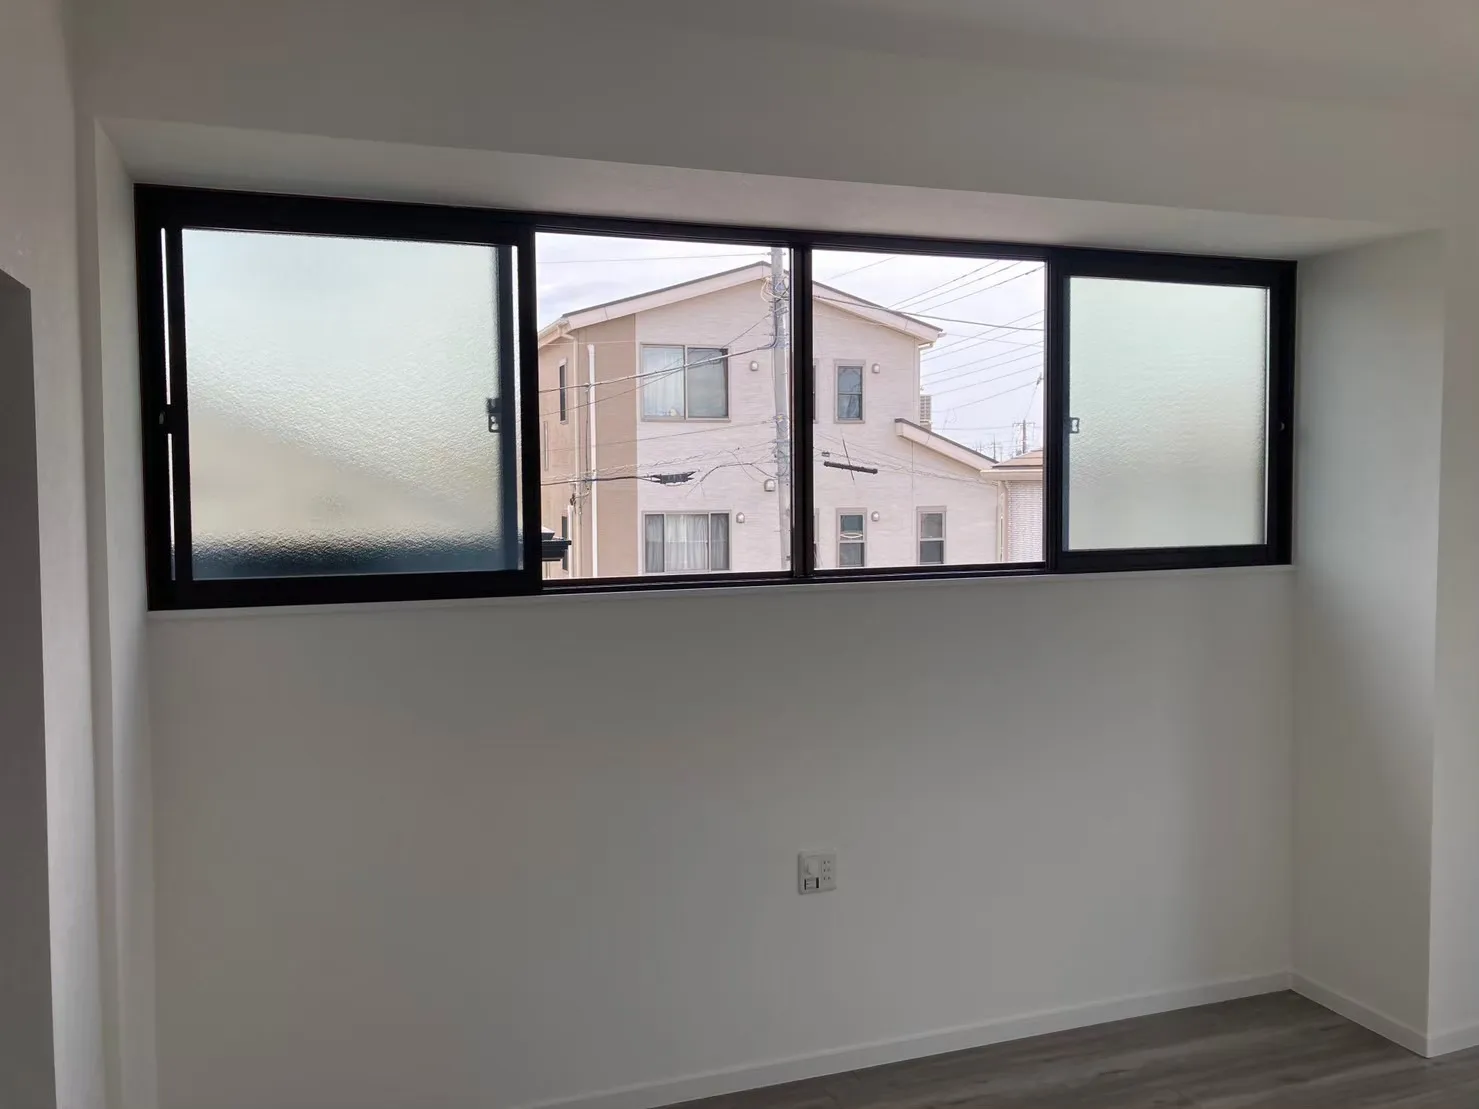 【2階洋室内窓設置】<br>YKK「マドリモ内窓プラマードU」を設置。<br>今ある窓に内窓を取付けて二重窓にし、窓の断熱性を高めることができ、室外からの騒音対策にも効果的です。<br>先進的窓リノベ補助金対象工事です。